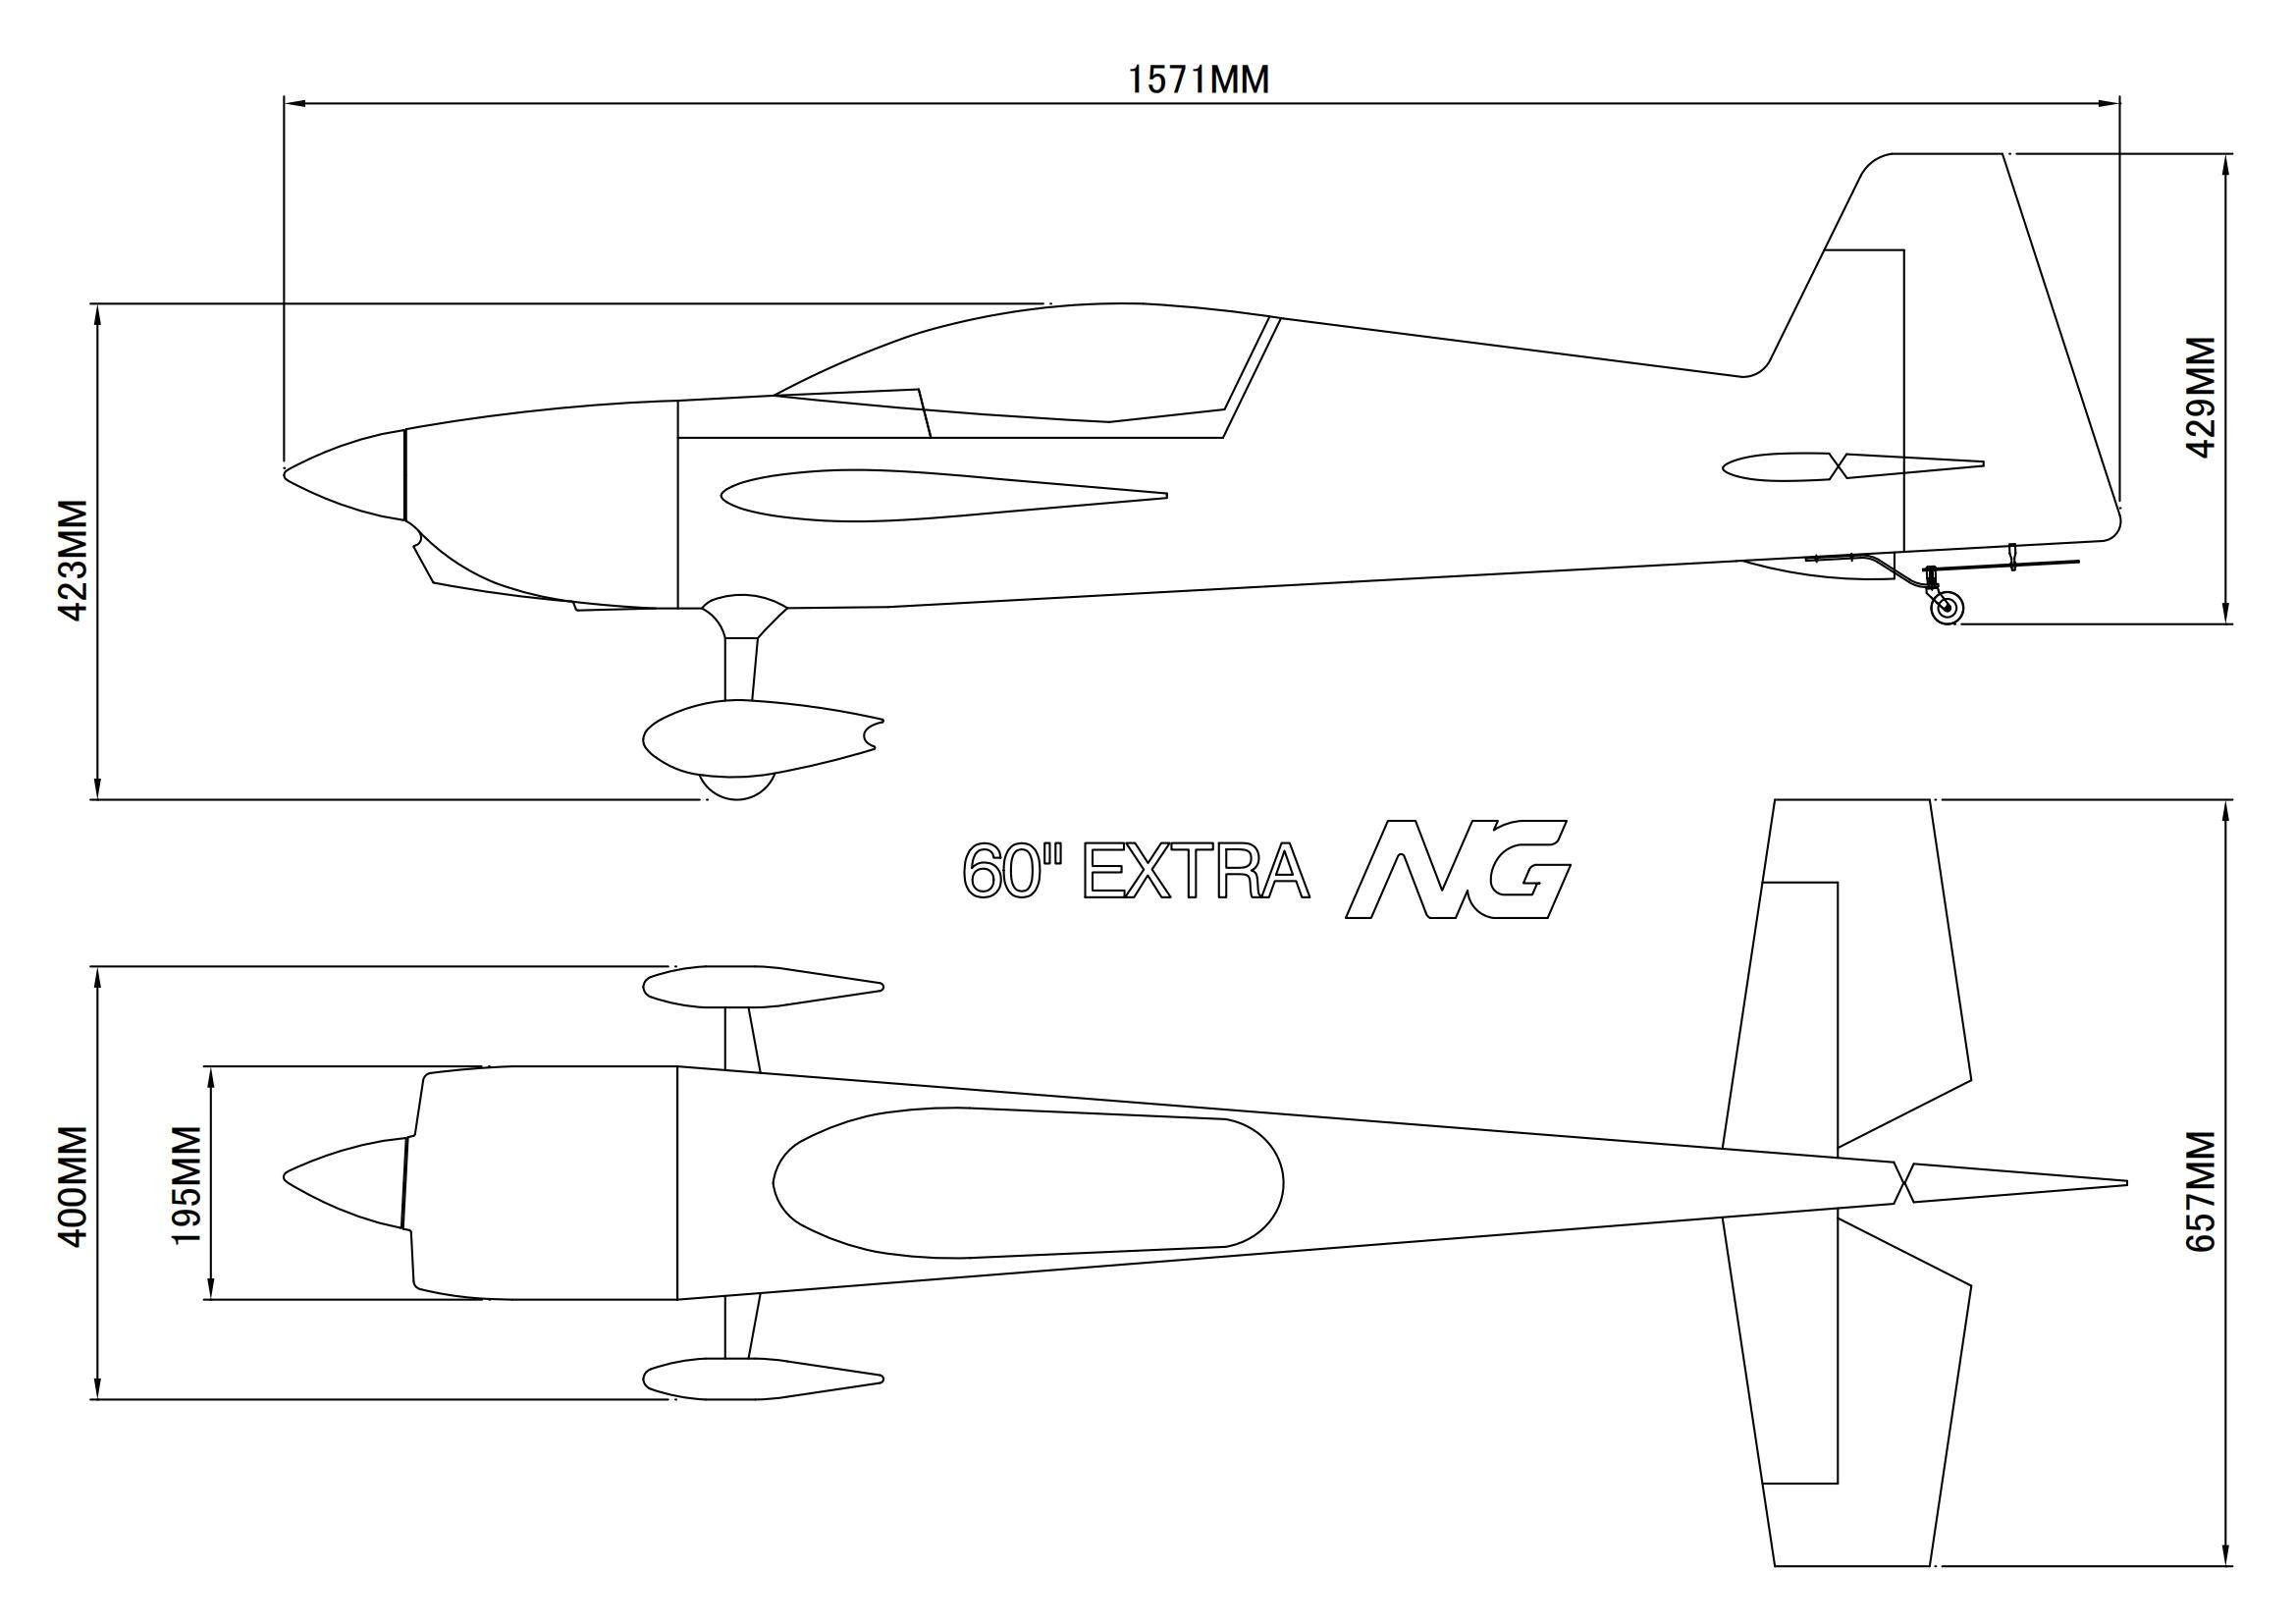 EXTRA NG - 60 - weiß/rot/blau - A